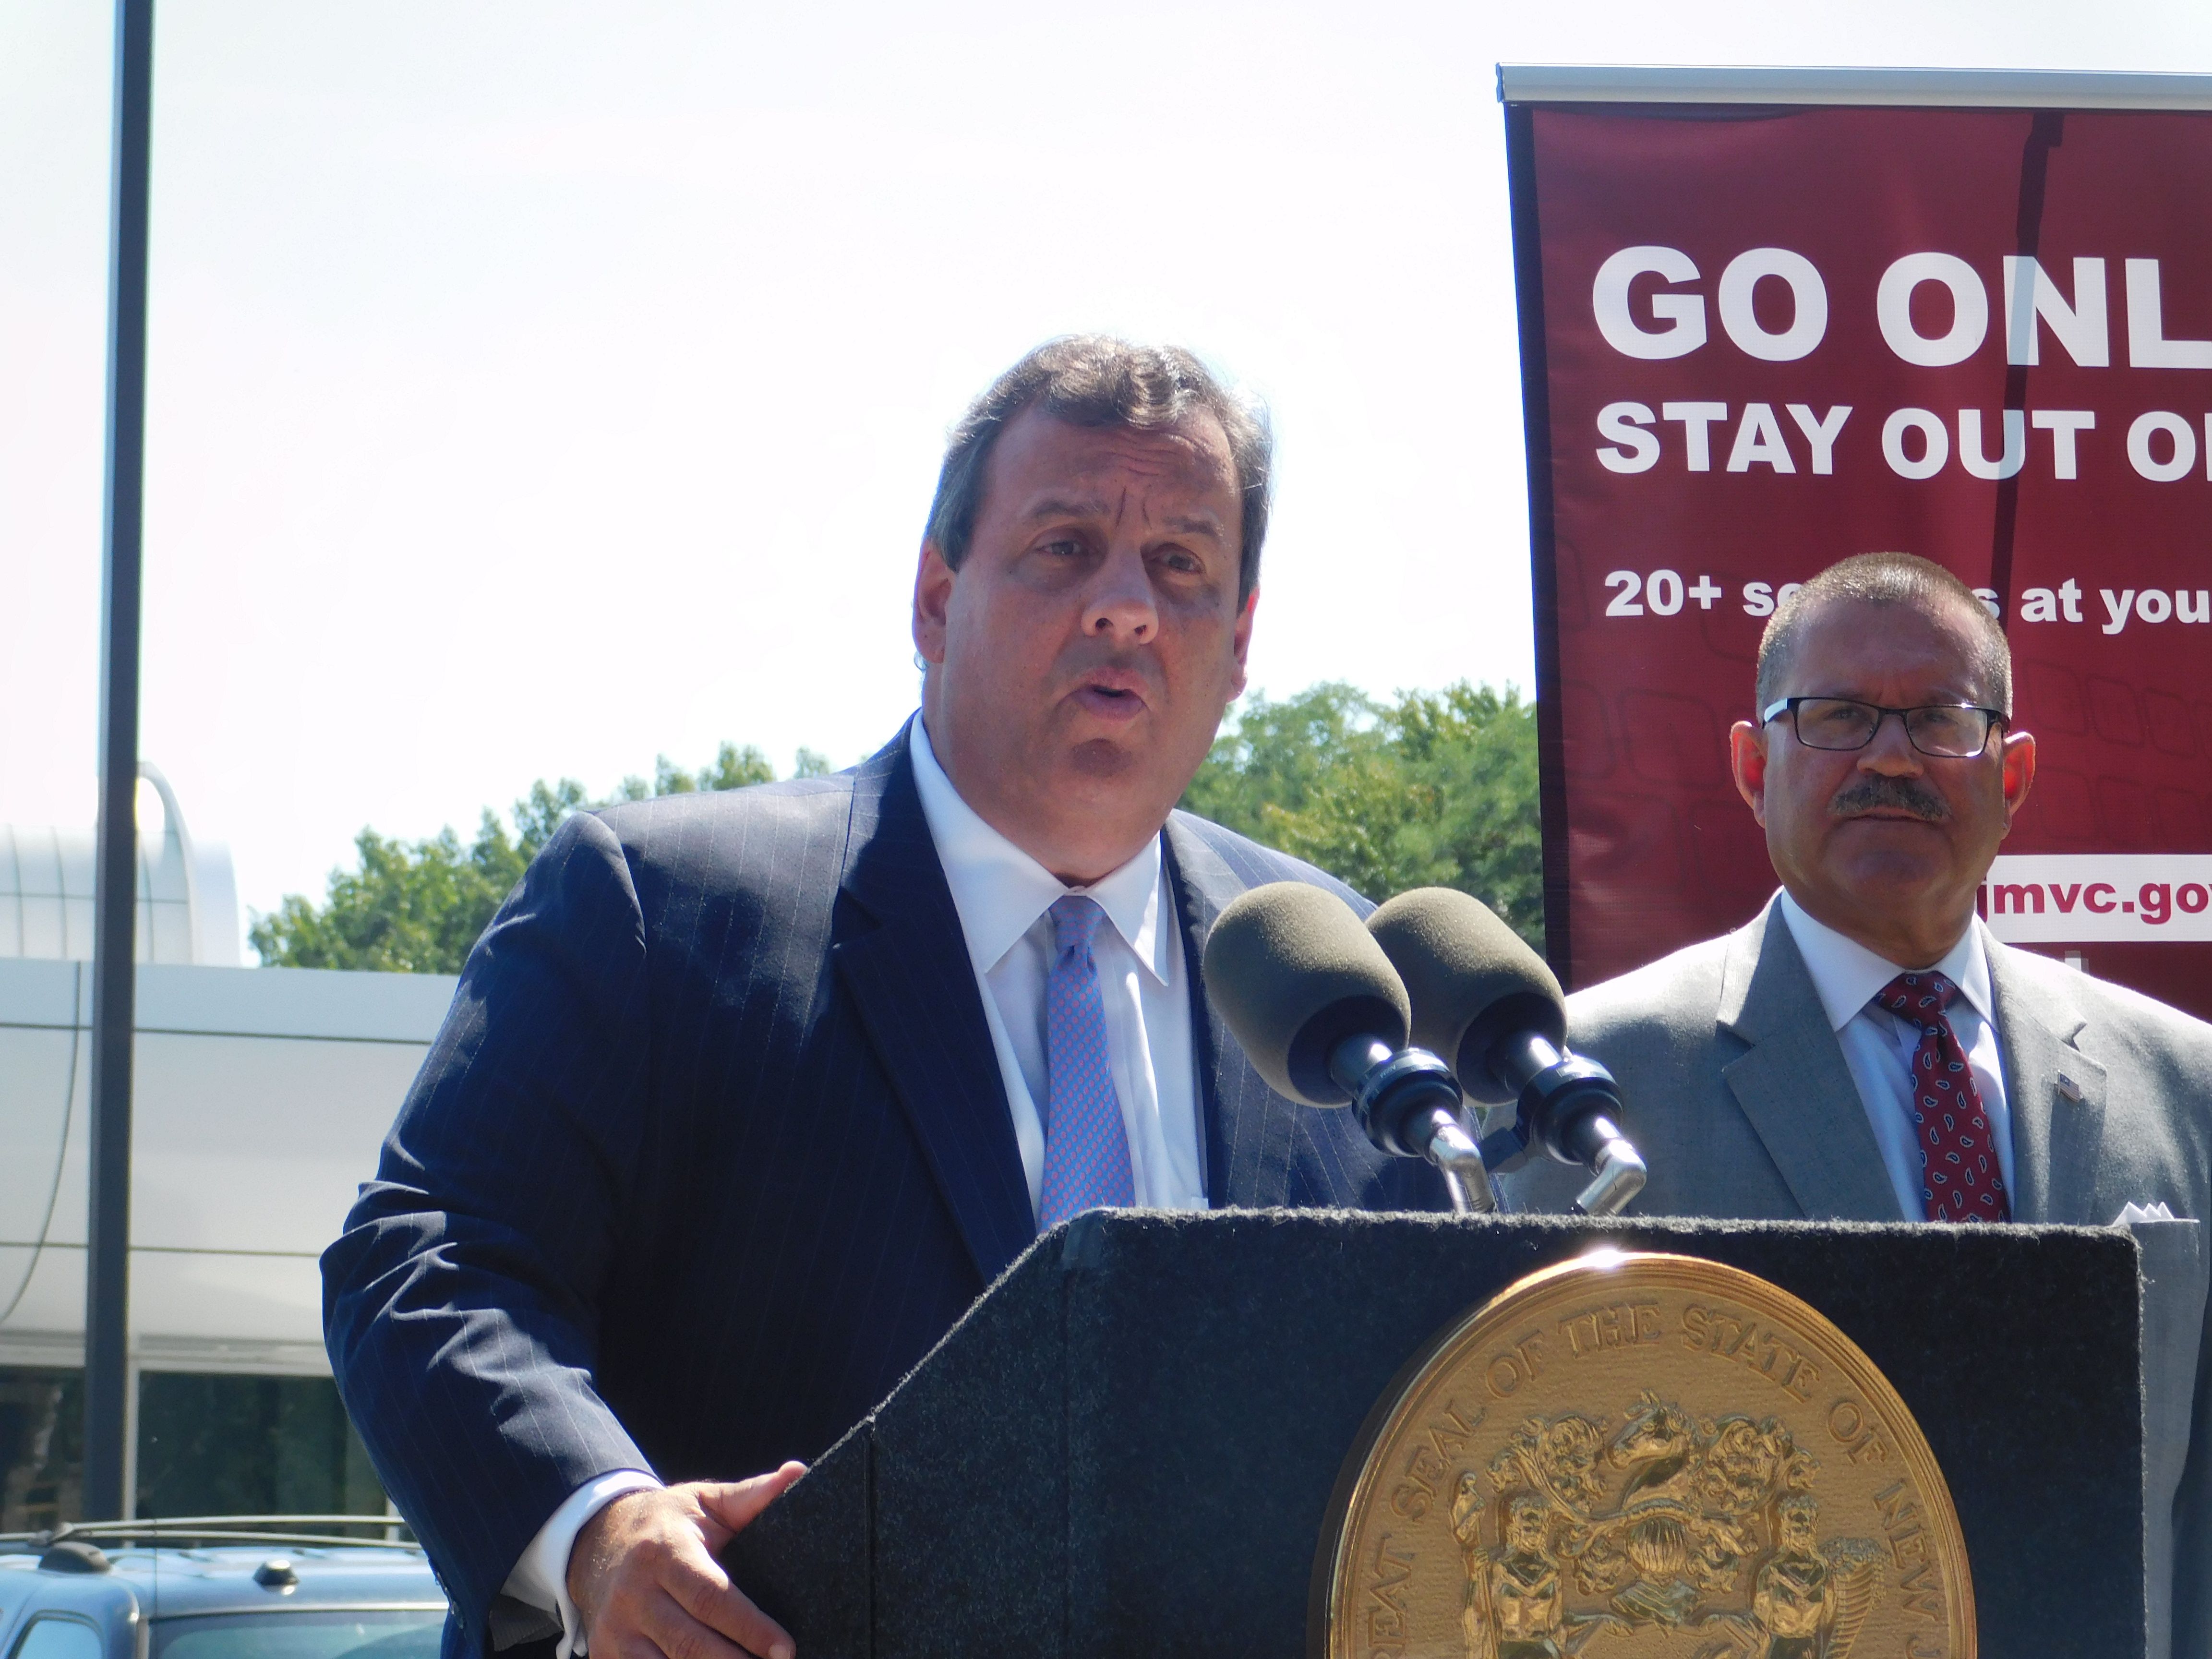 Christie anunță planul de îmbunătățire a Comisiei pentru autovehicule NJ